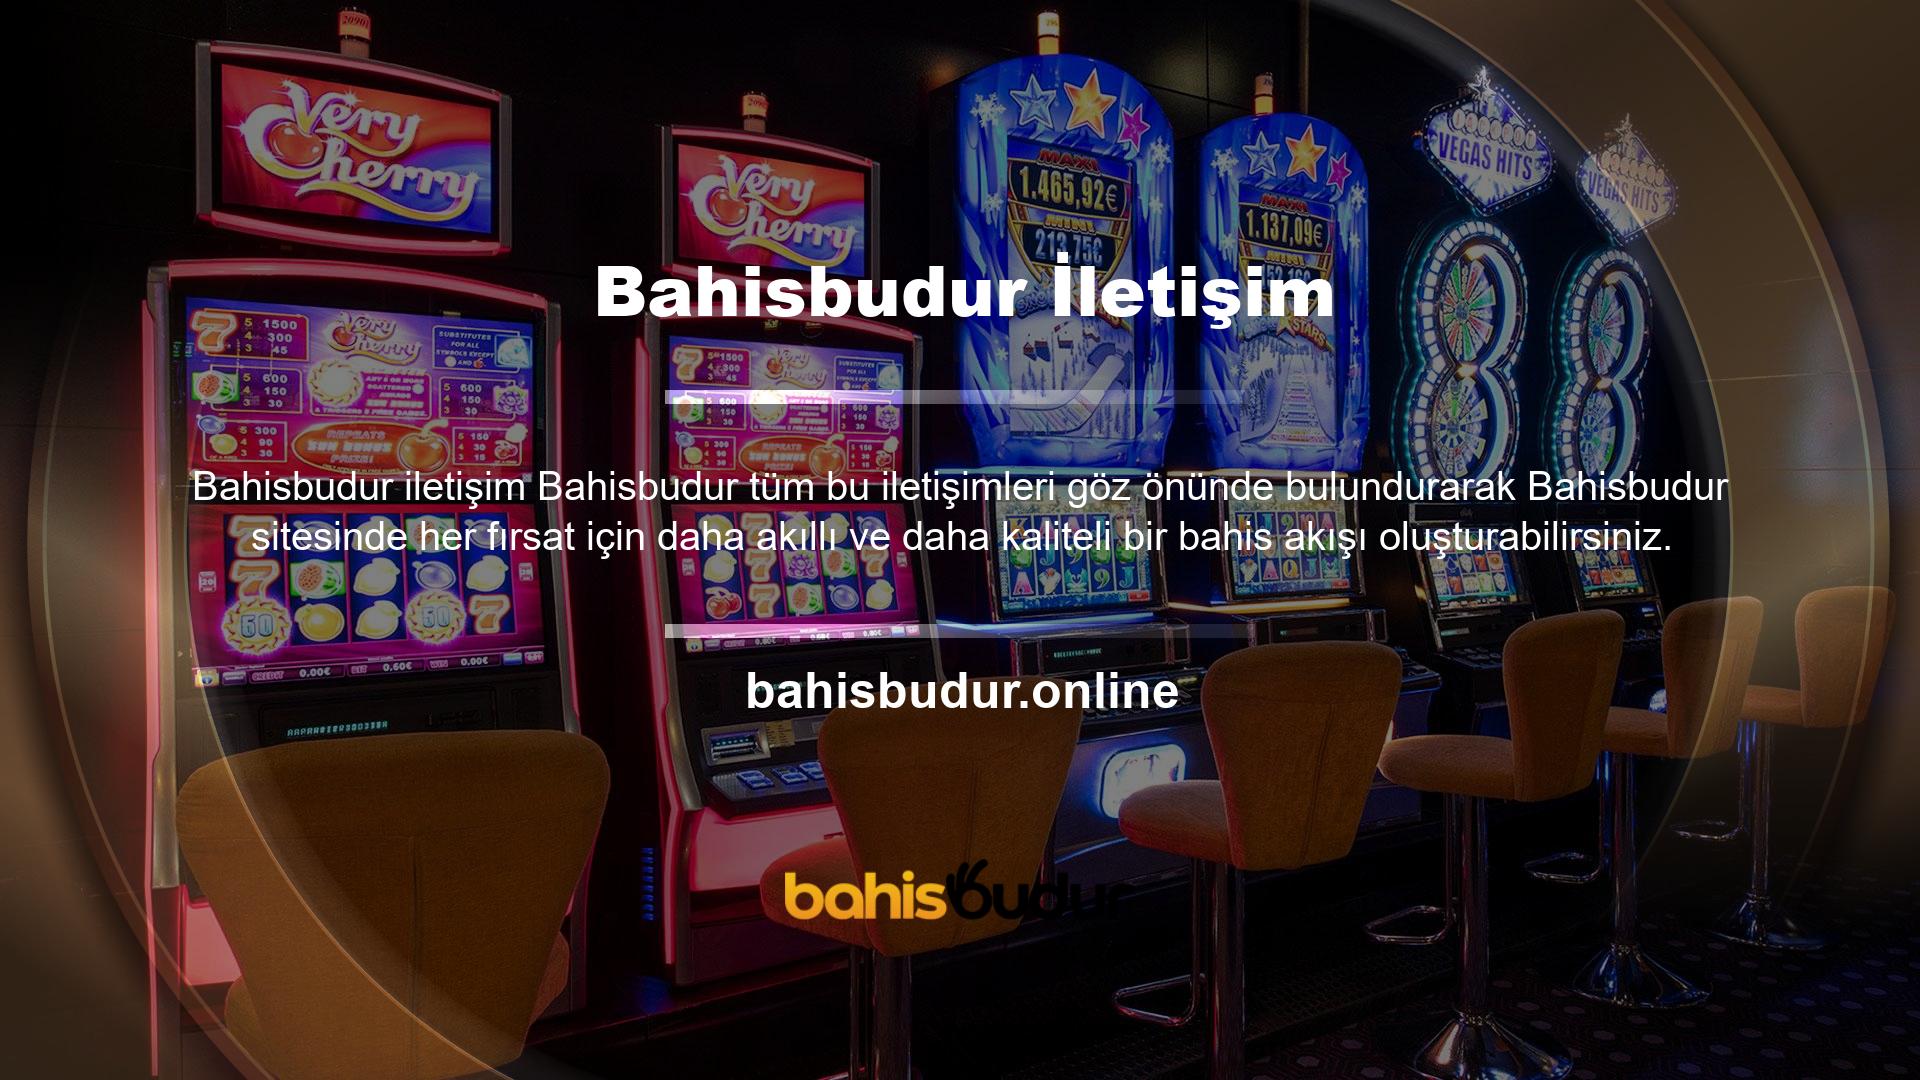 Yani Bahisbudur slot bahislerine bakarsanız, genel yapı ve aktif sistem siteye dayanmaktadır